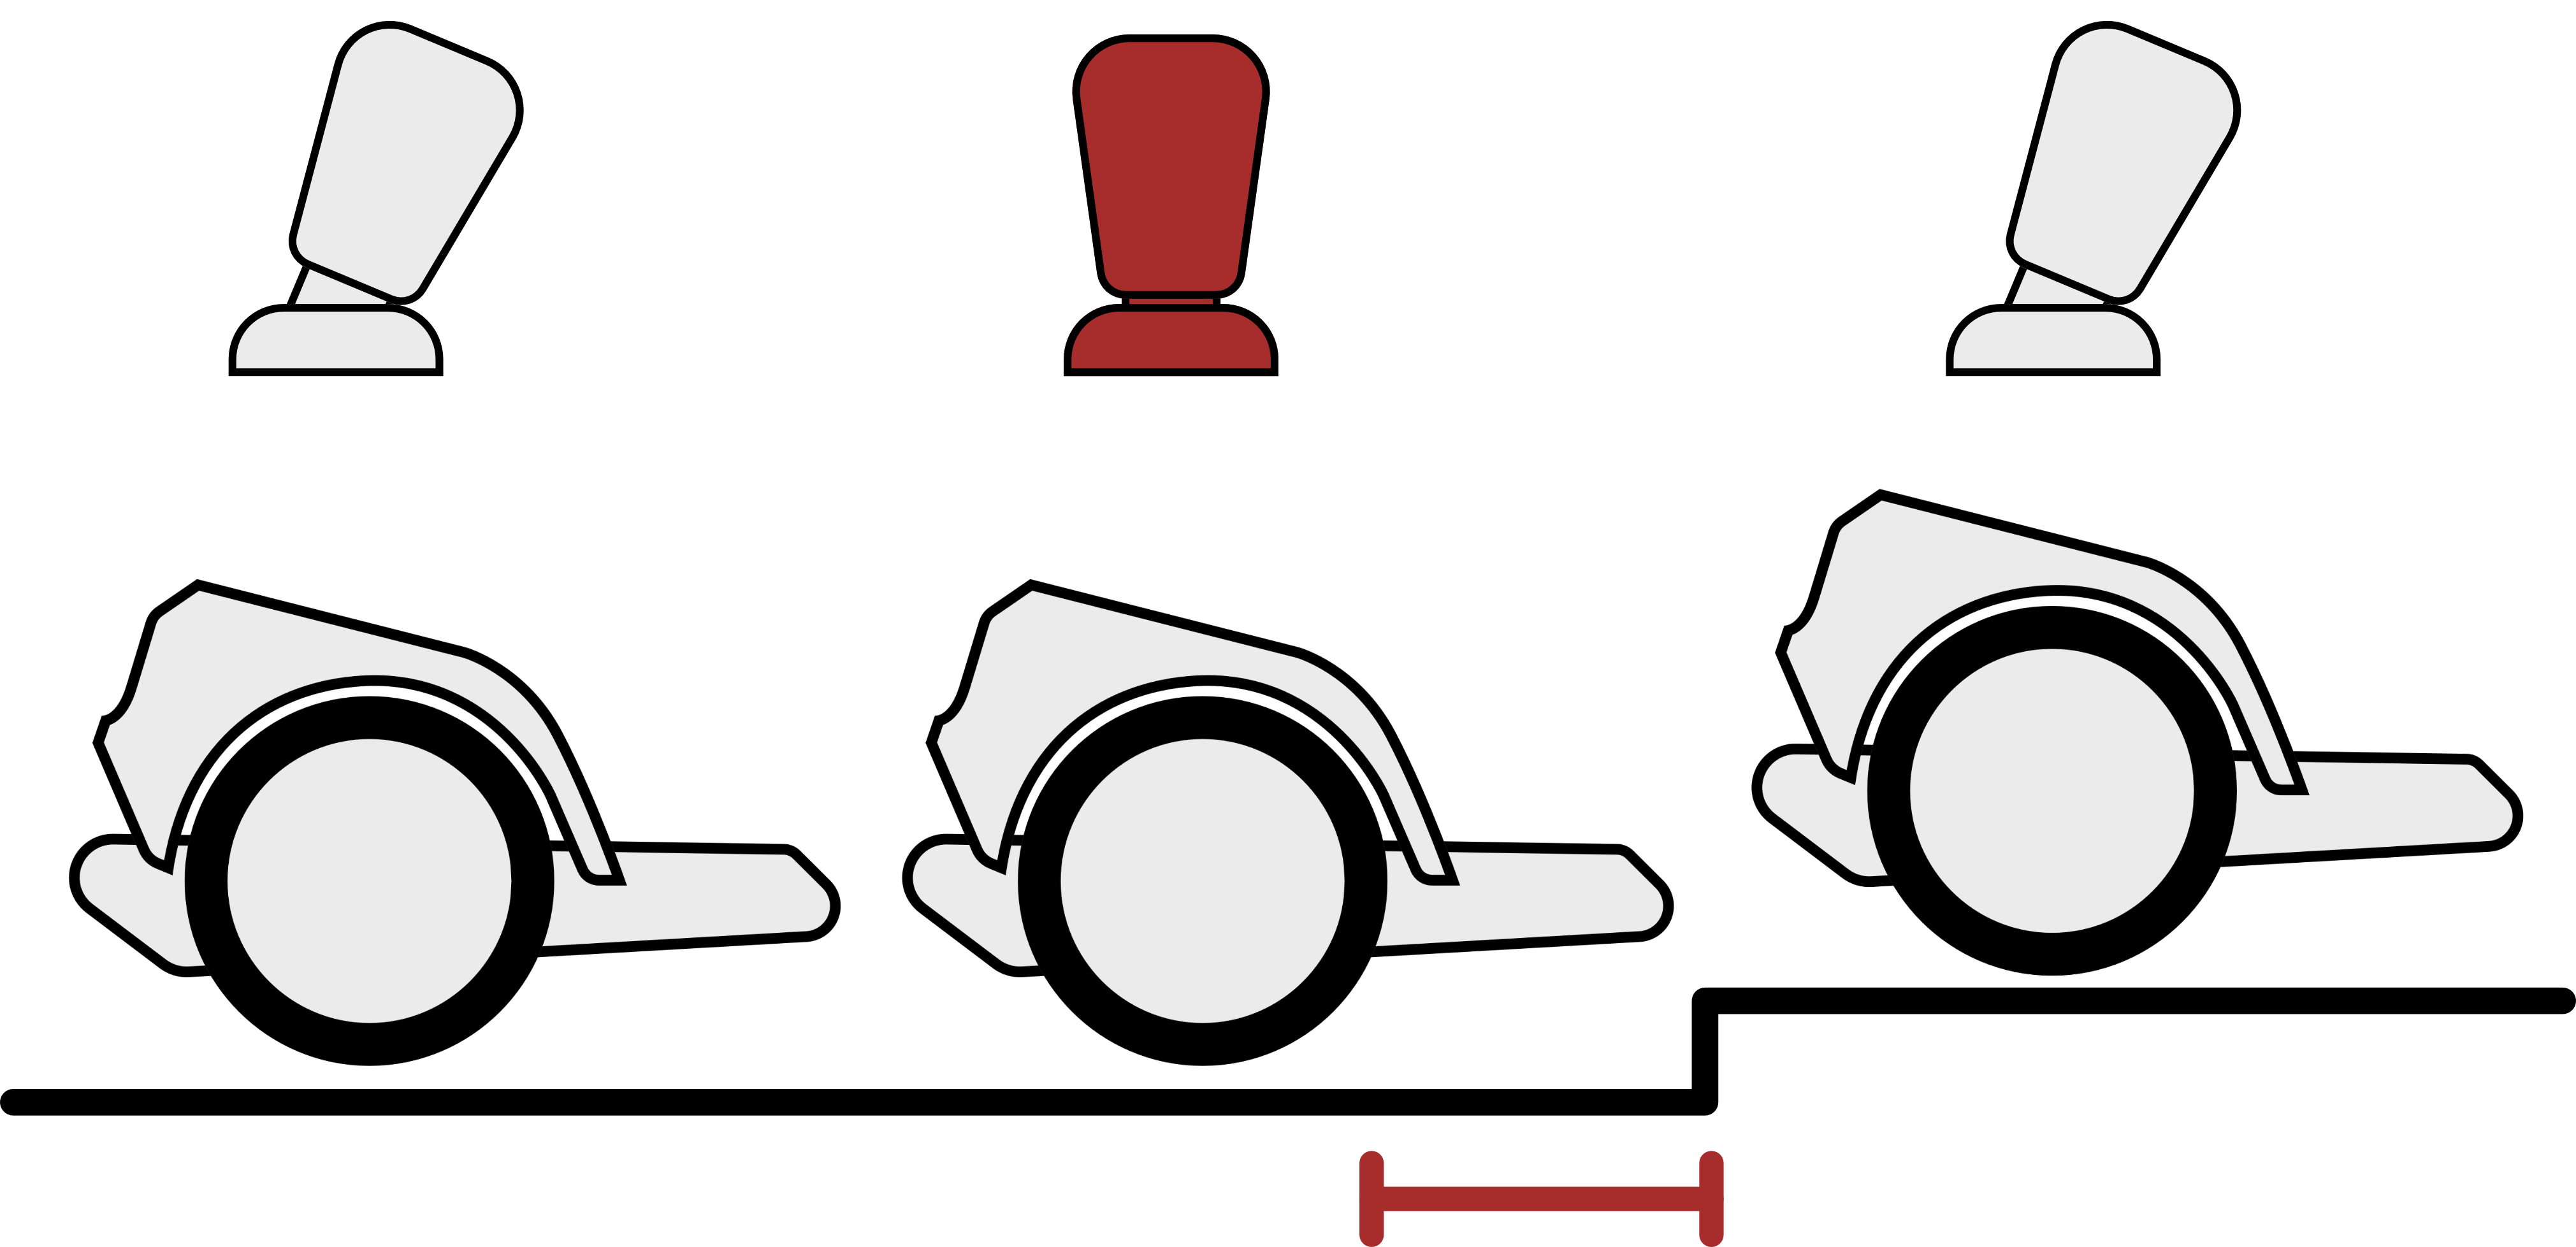 Montée des seuils : Peu avant que la roue principale n'atteigne le seuil, le joystick doit être brièvement relâché (amené en position neutre).